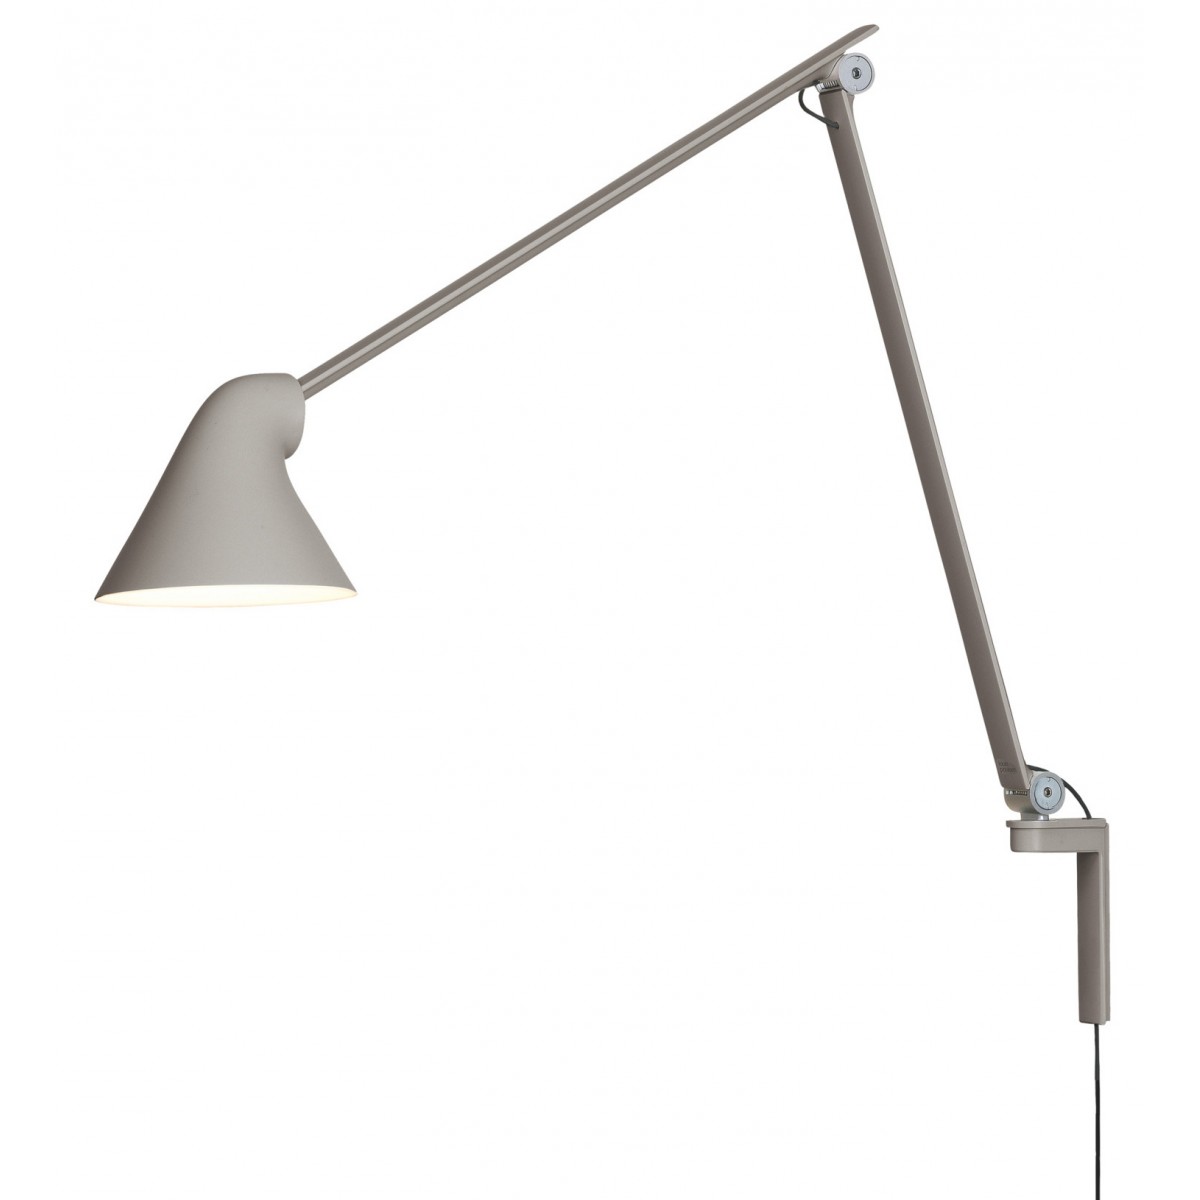 NJP wall lamp long arm – Light grey